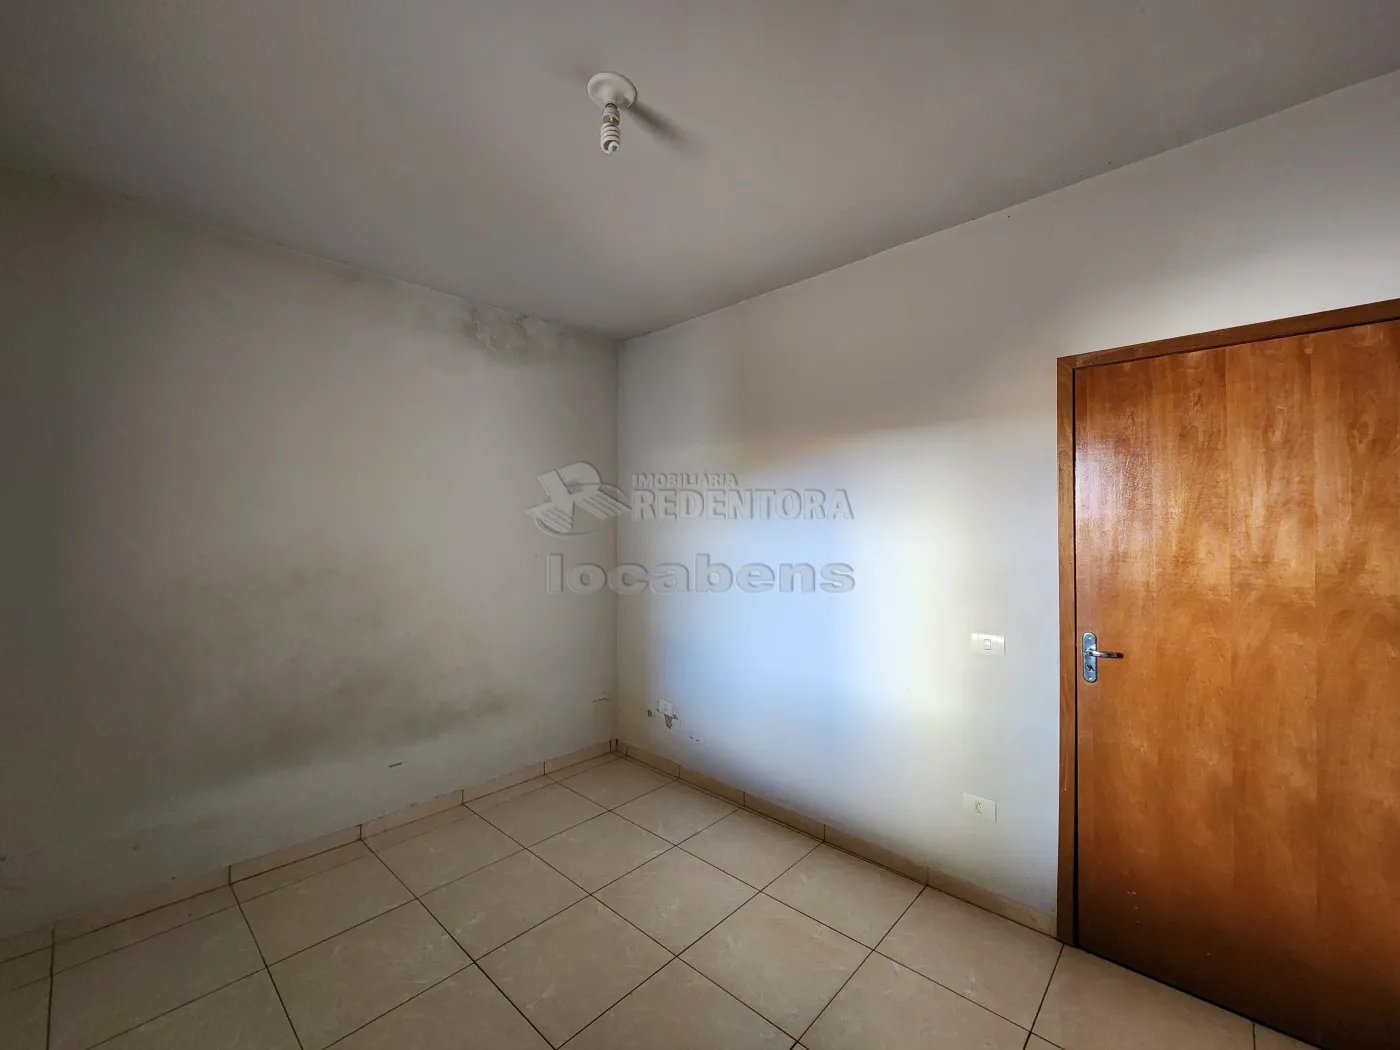 Alugar Casa / Padrão em Guapiaçu apenas R$ 1.150,00 - Foto 9